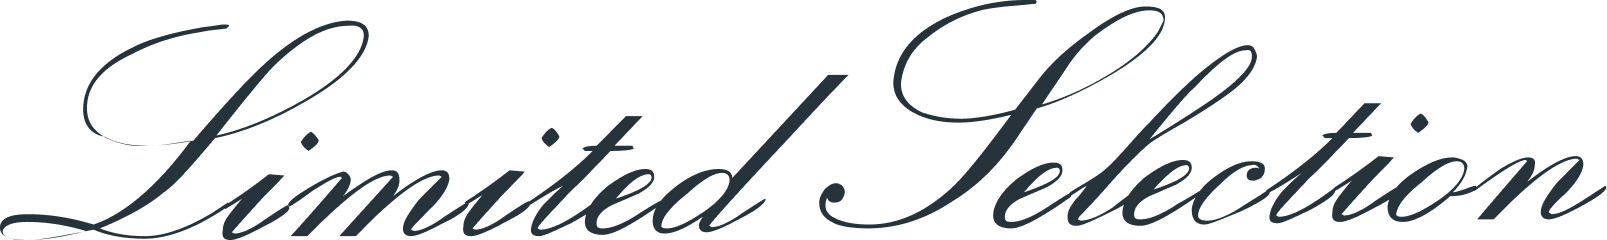 Info divisor logo